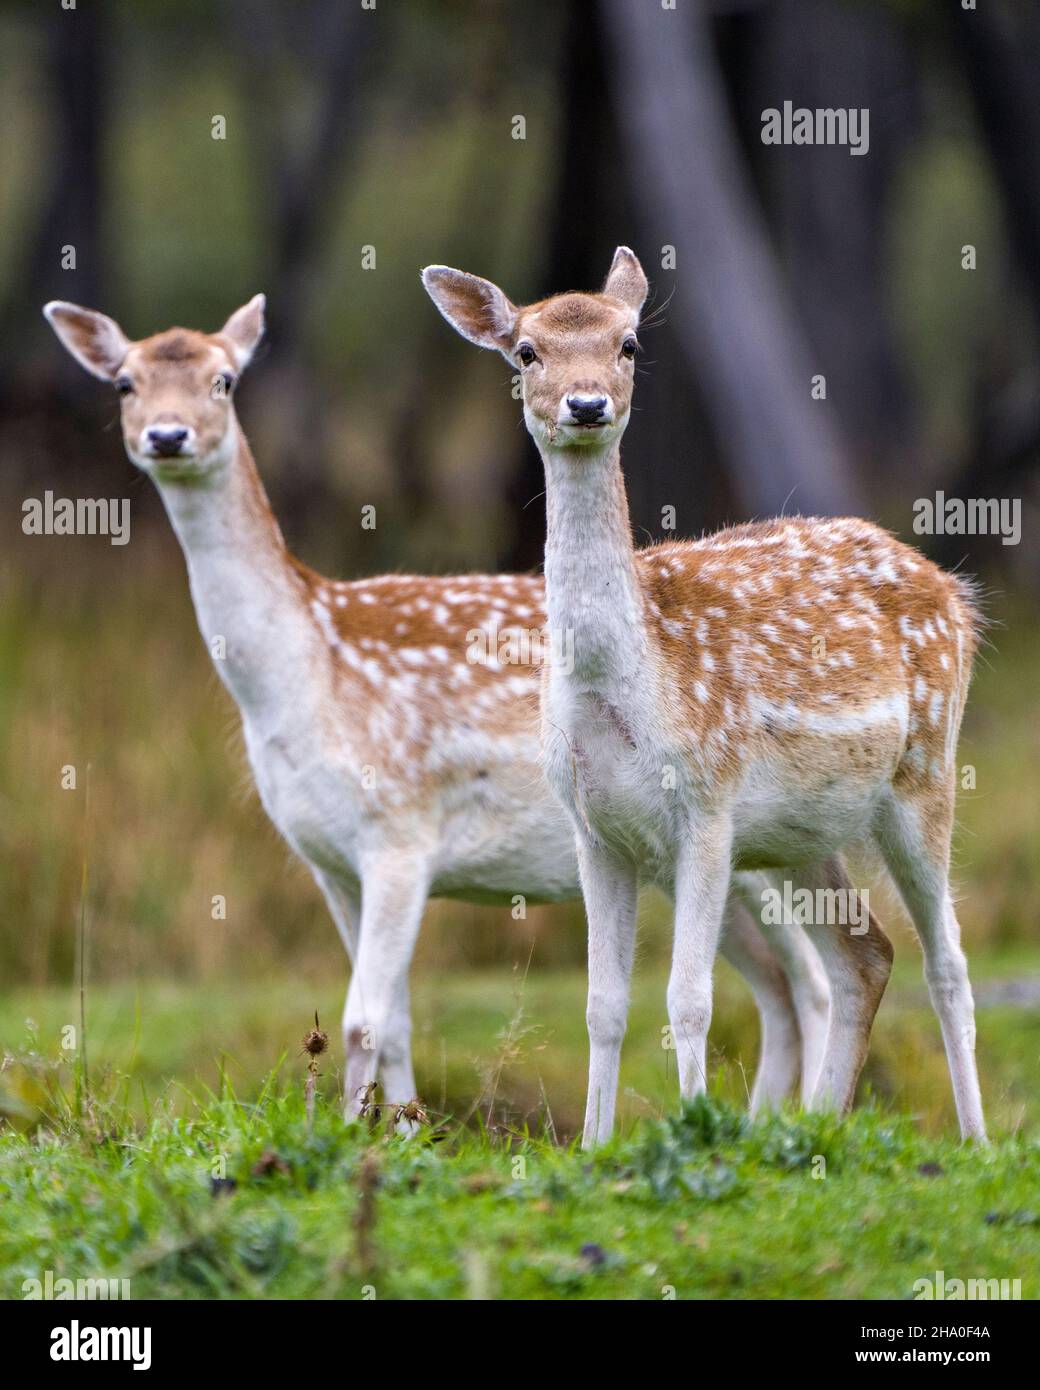 Vue en gros plan de couple d'animaux de cerf regardant l'appareil photo avec un arrière-plan flou dans leur environnement et leur habitat environnant.Deer photo et image. Banque D'Images